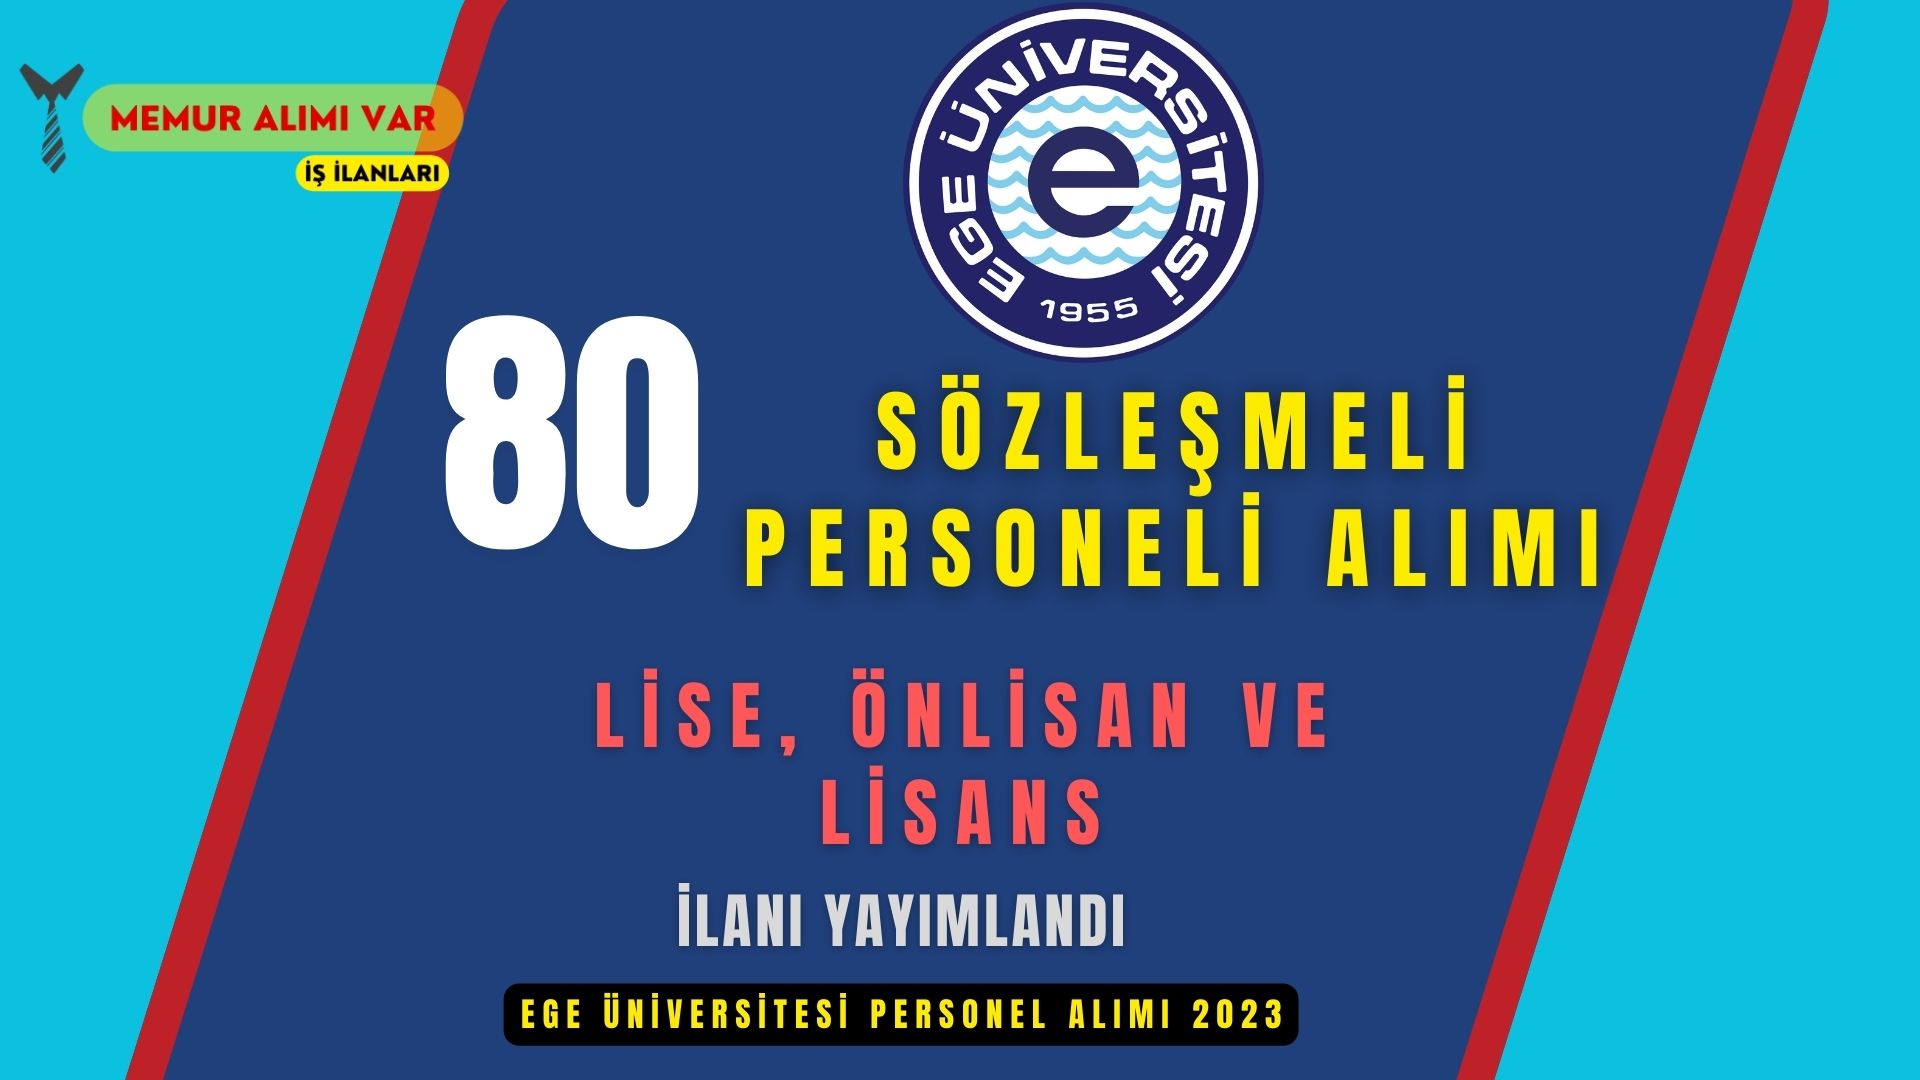 Ege Üniversitesi 81 Sözleşmeli Personel Alımı 2023 Lise, Ön Lisan ve Lisans